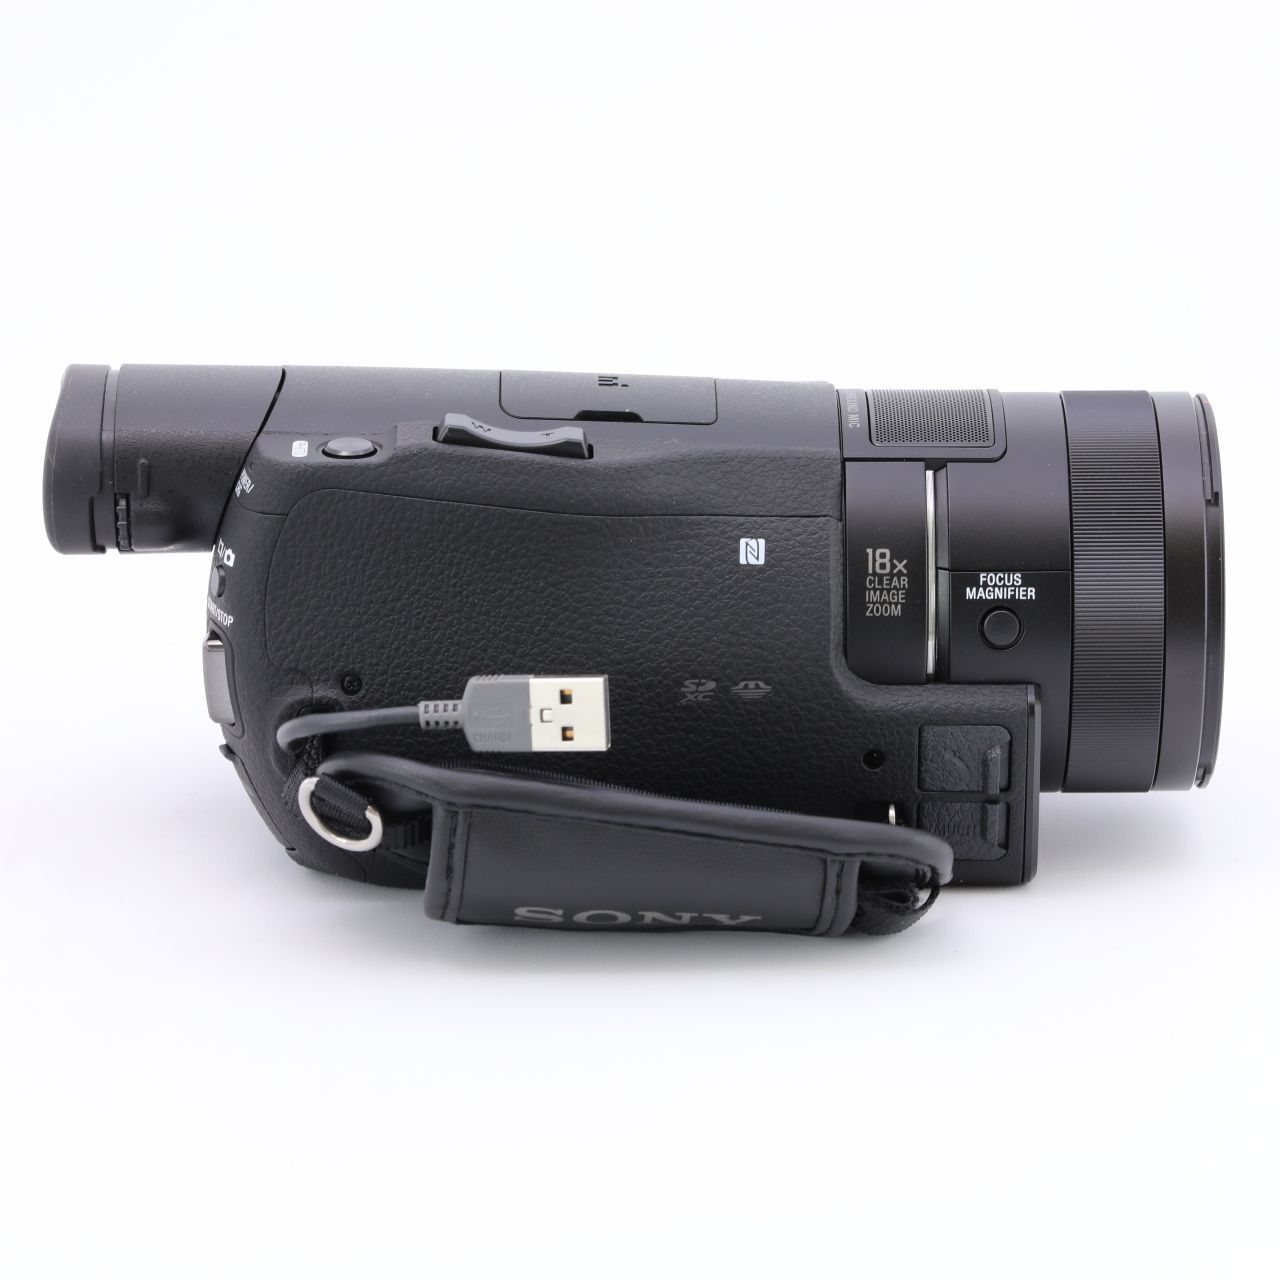 ソニー SONY ビデオカメラ FDR-AX100 4K 光学12倍 ブラック Handycam FDR-AX100 BC - 4